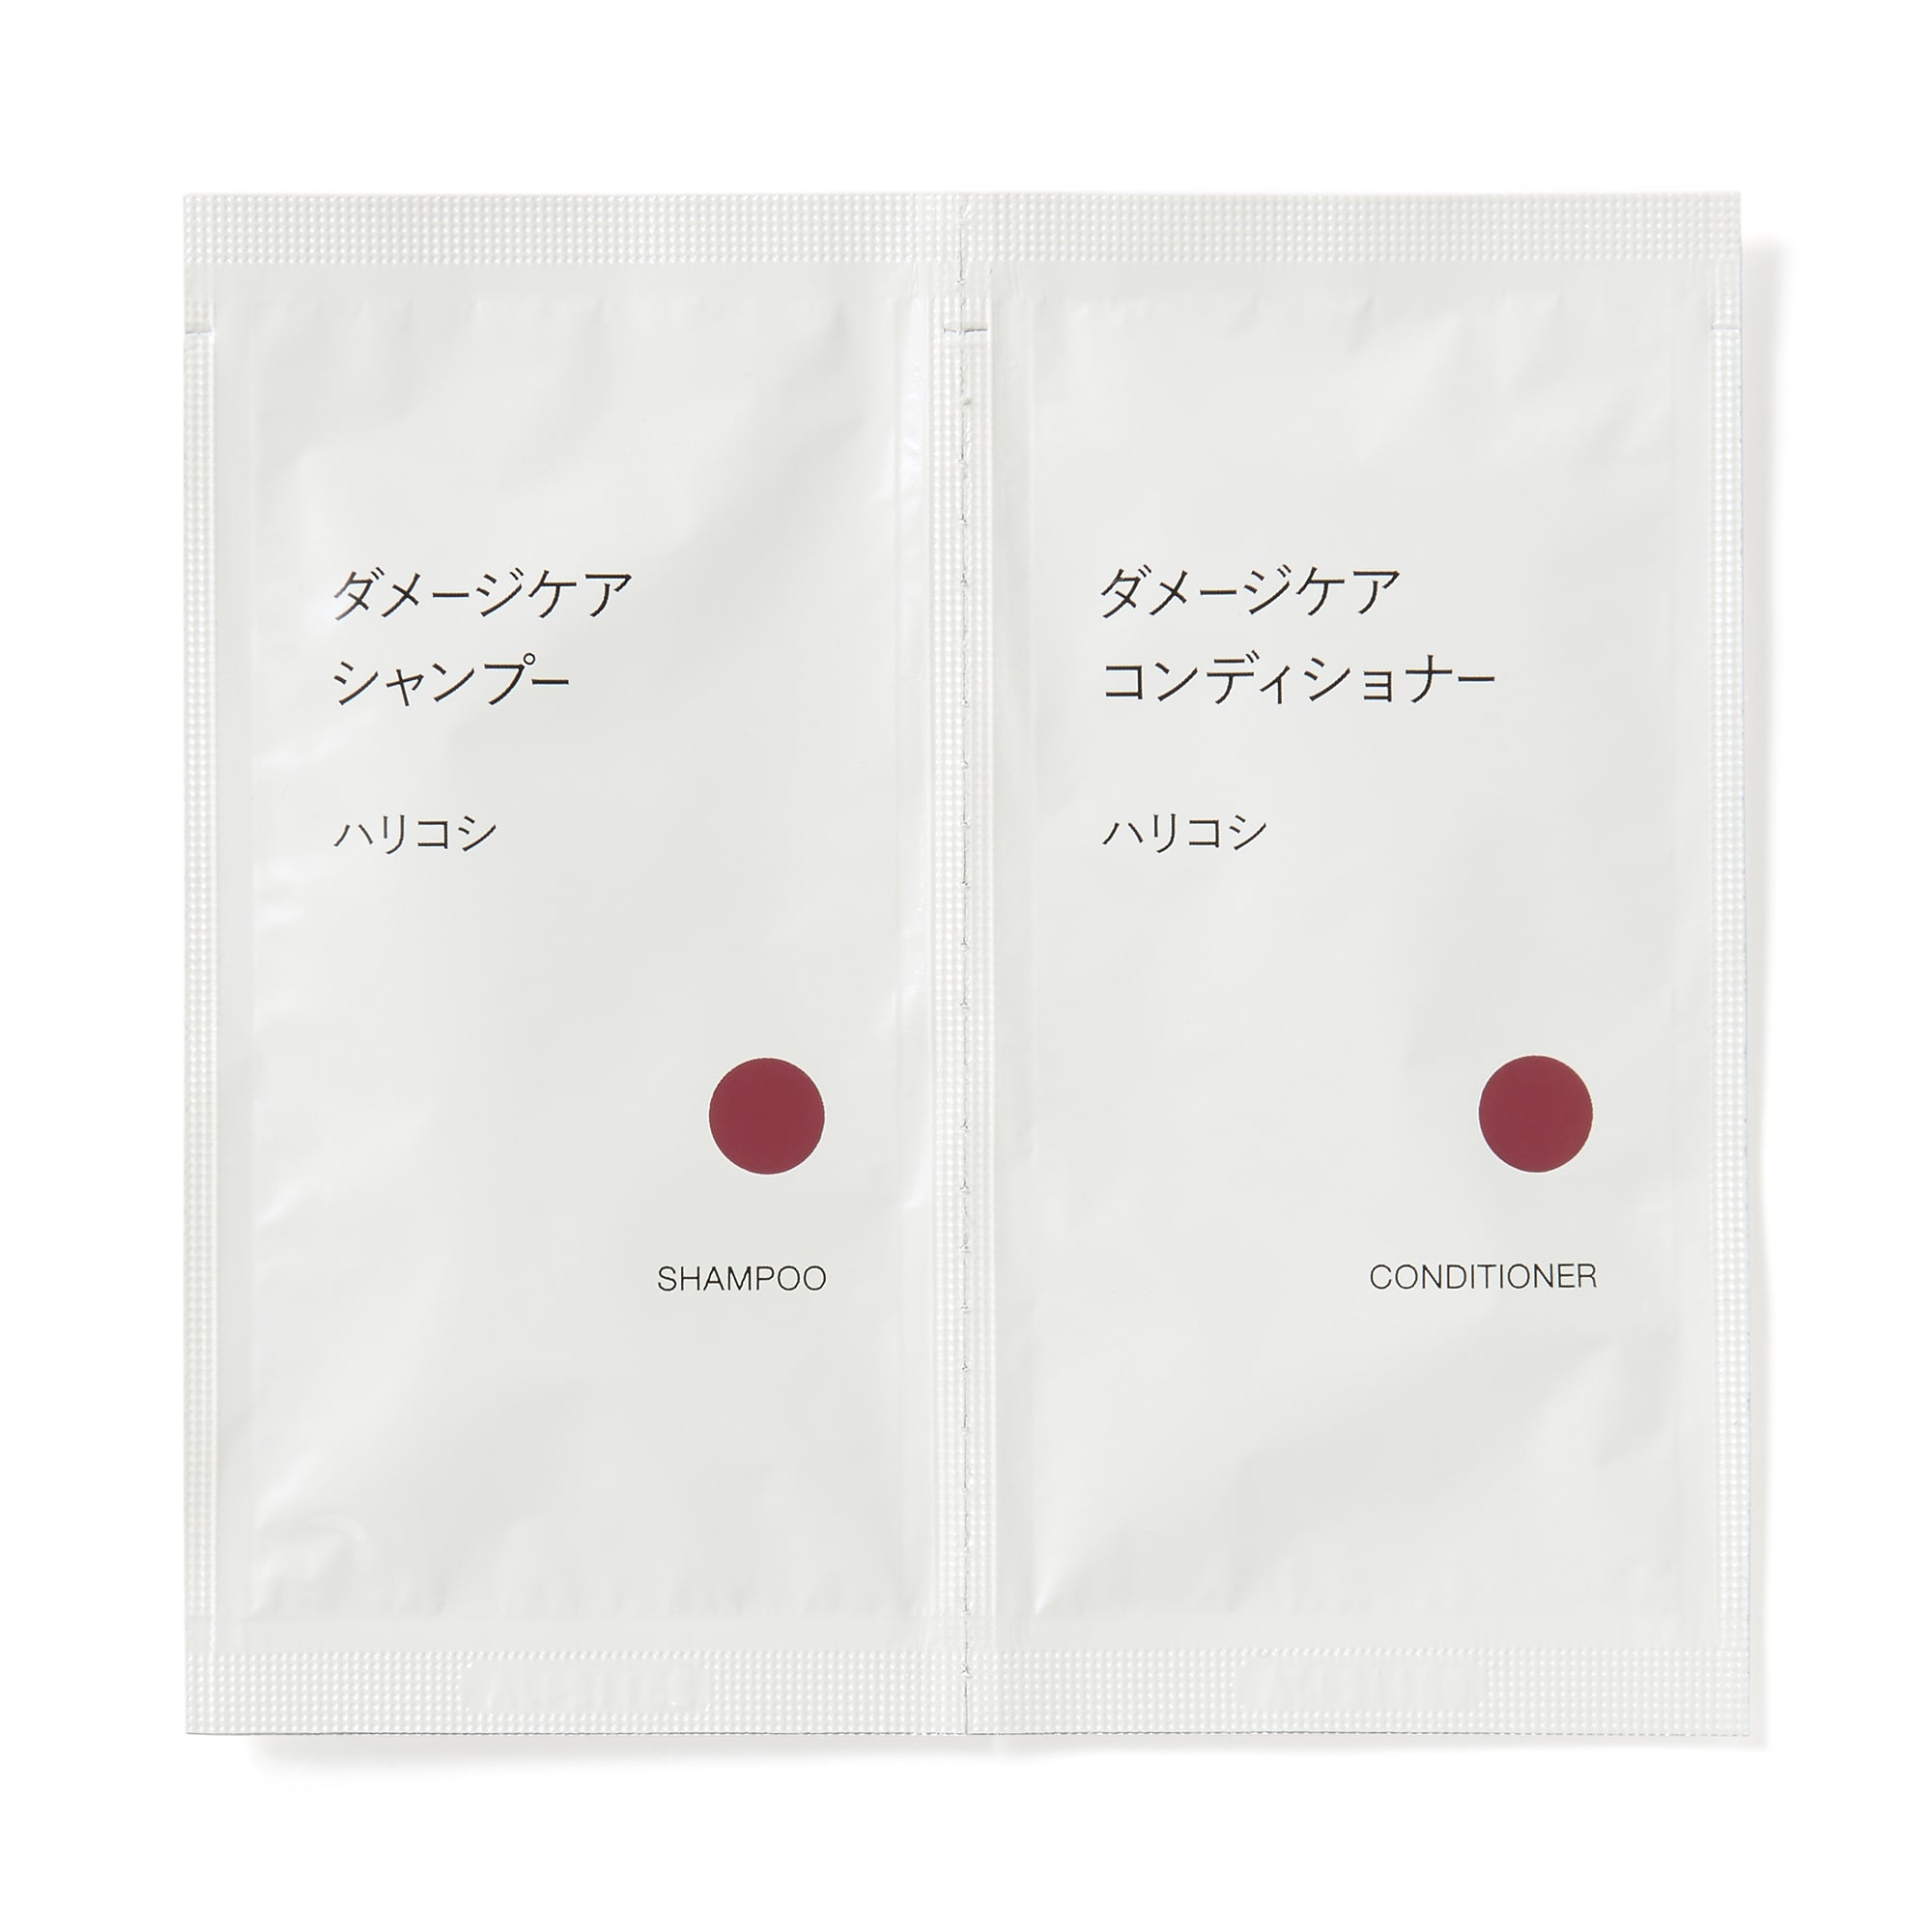 무인양품 일본 케어 샴푸 컨디셔너 세트 해리 코시